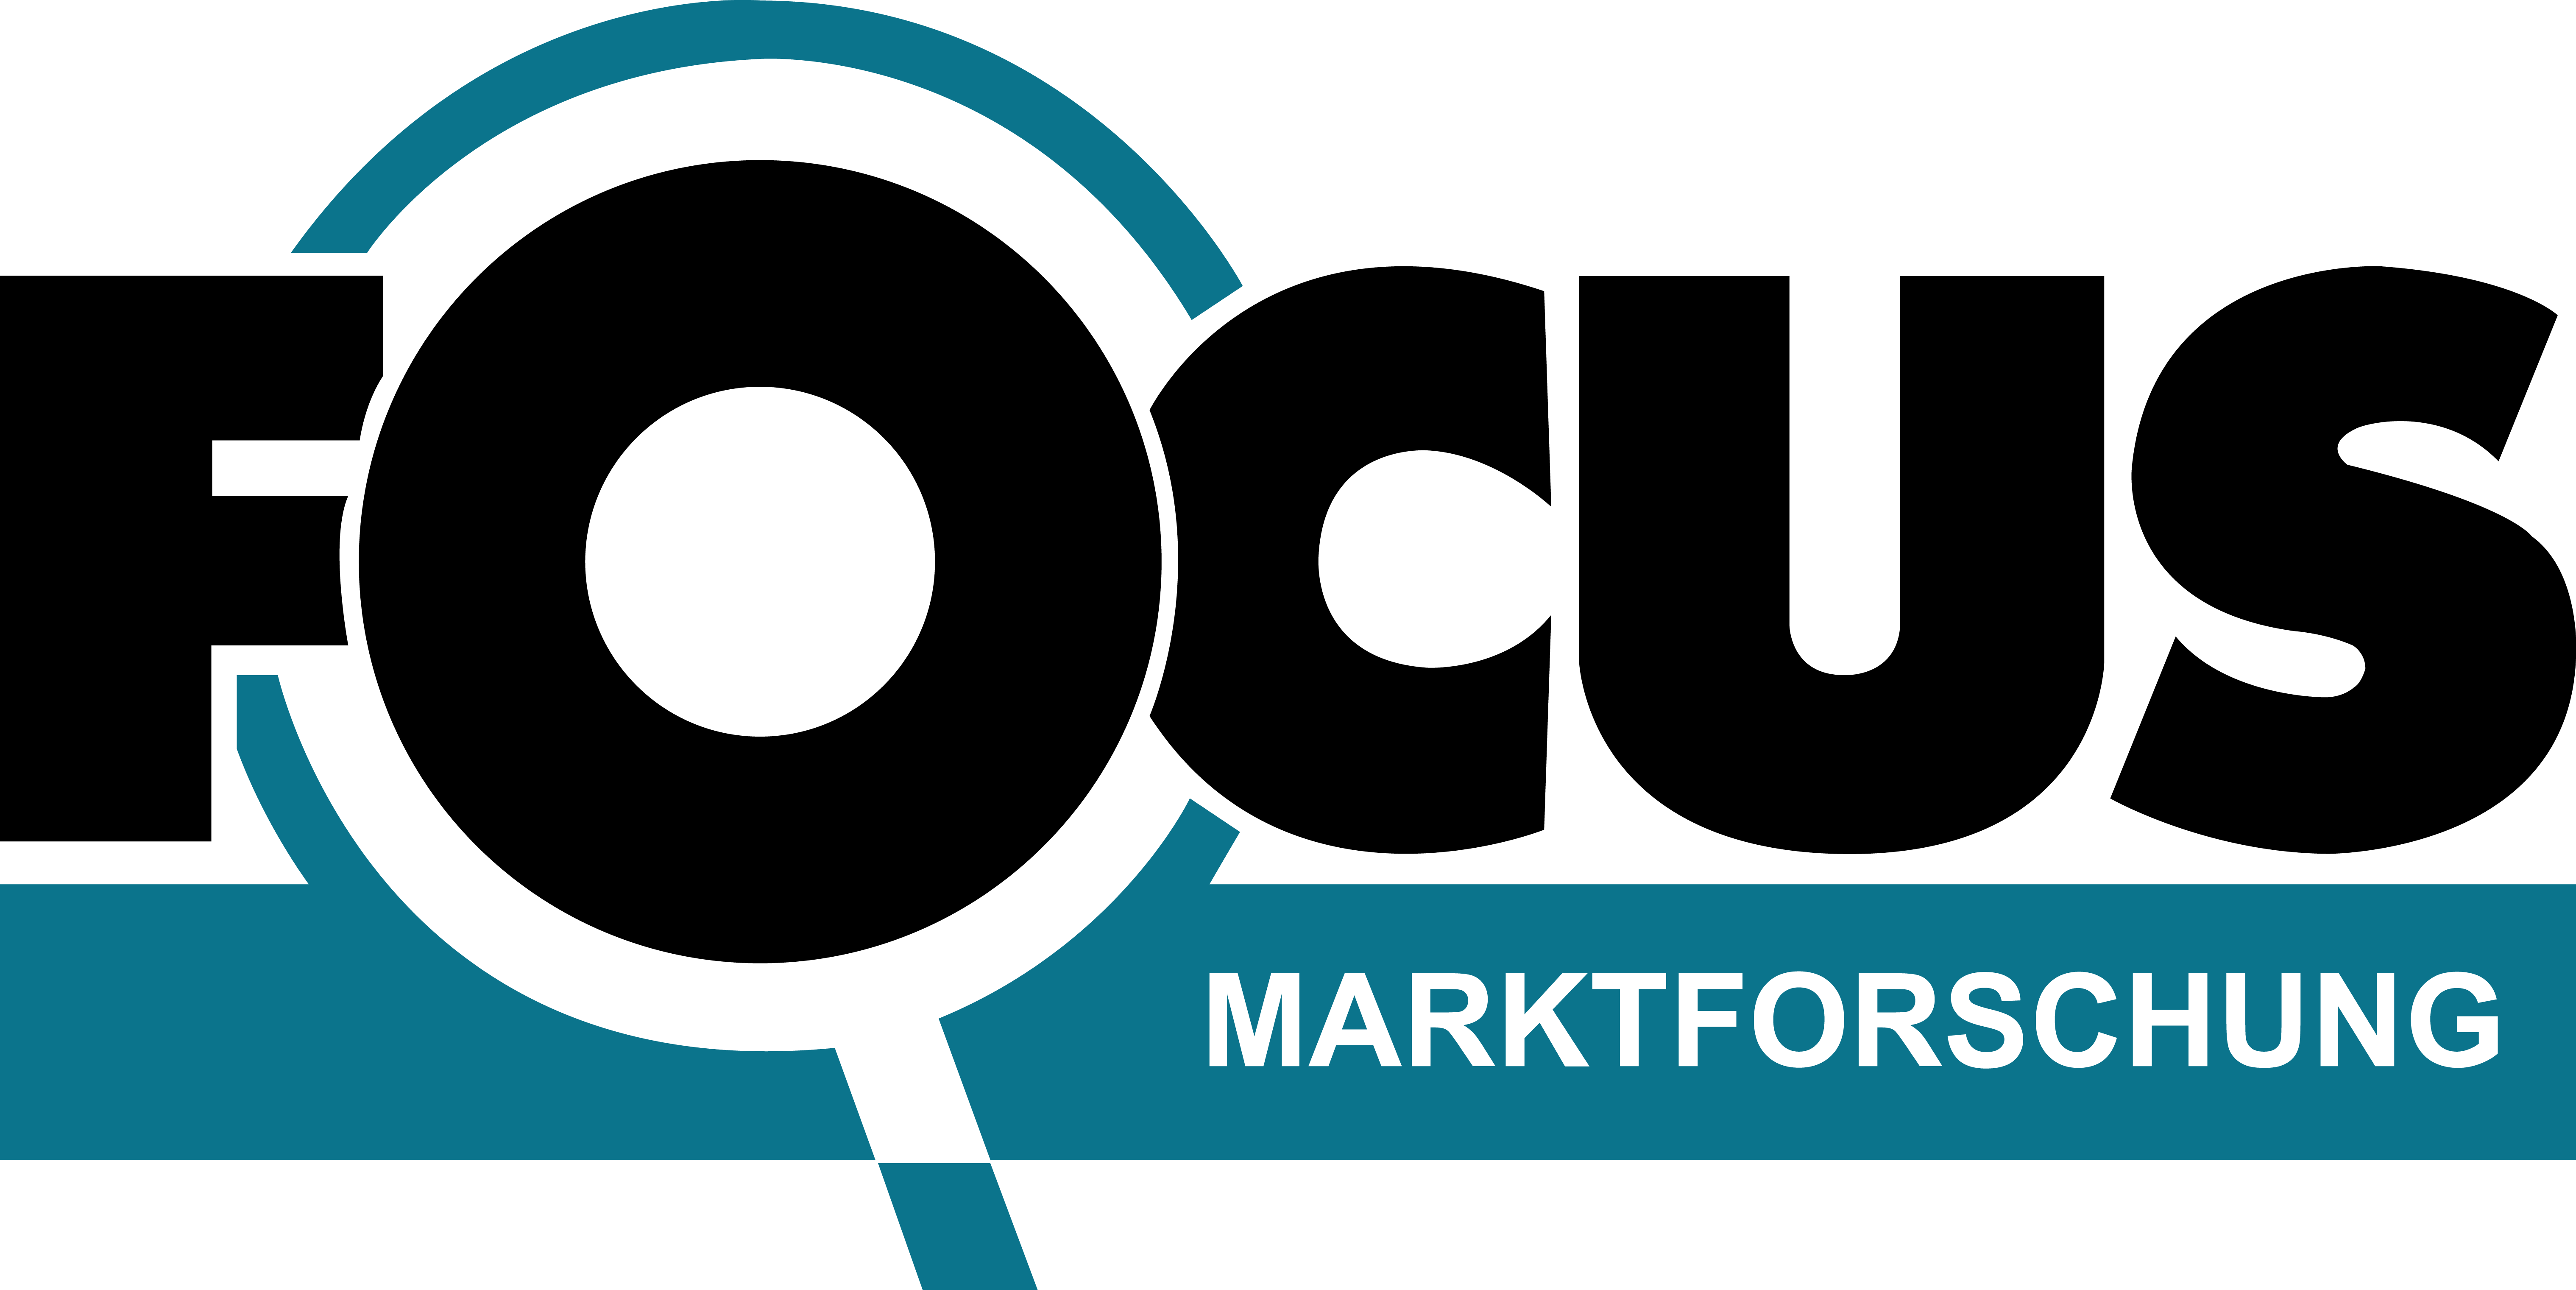 Focus Logo - FOCUS Logo Full – FOCUS Marketing Research